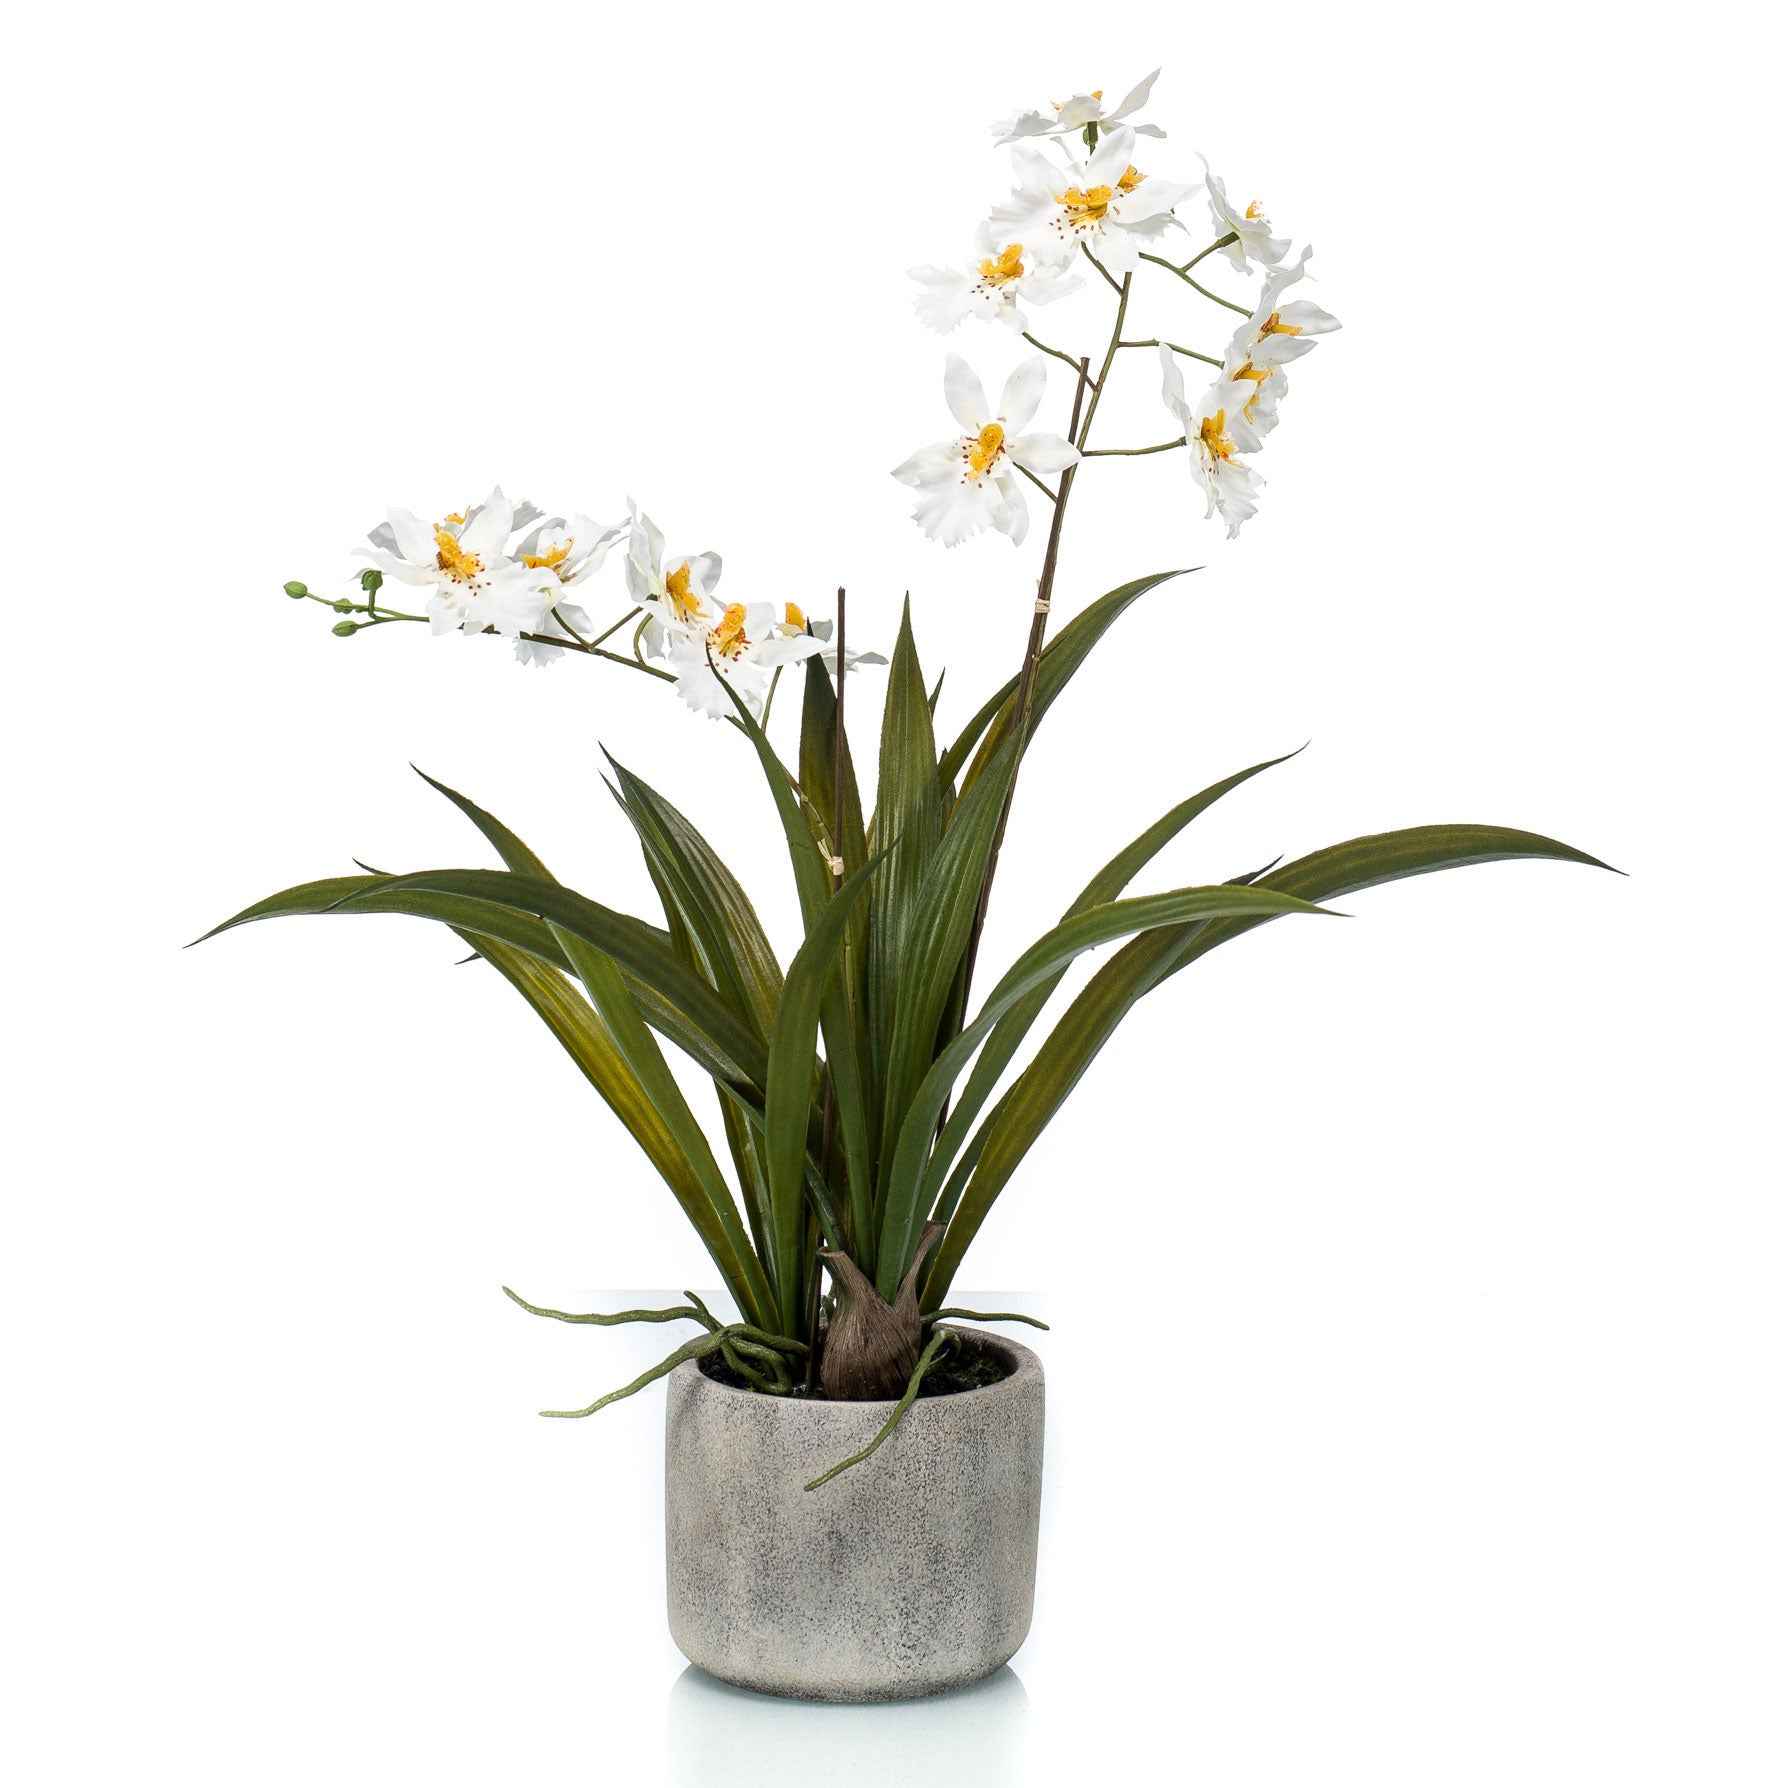 Kunstplant Orchidee Oncidium wit-geel incl. keramische sierpot - Groene kunstplanten